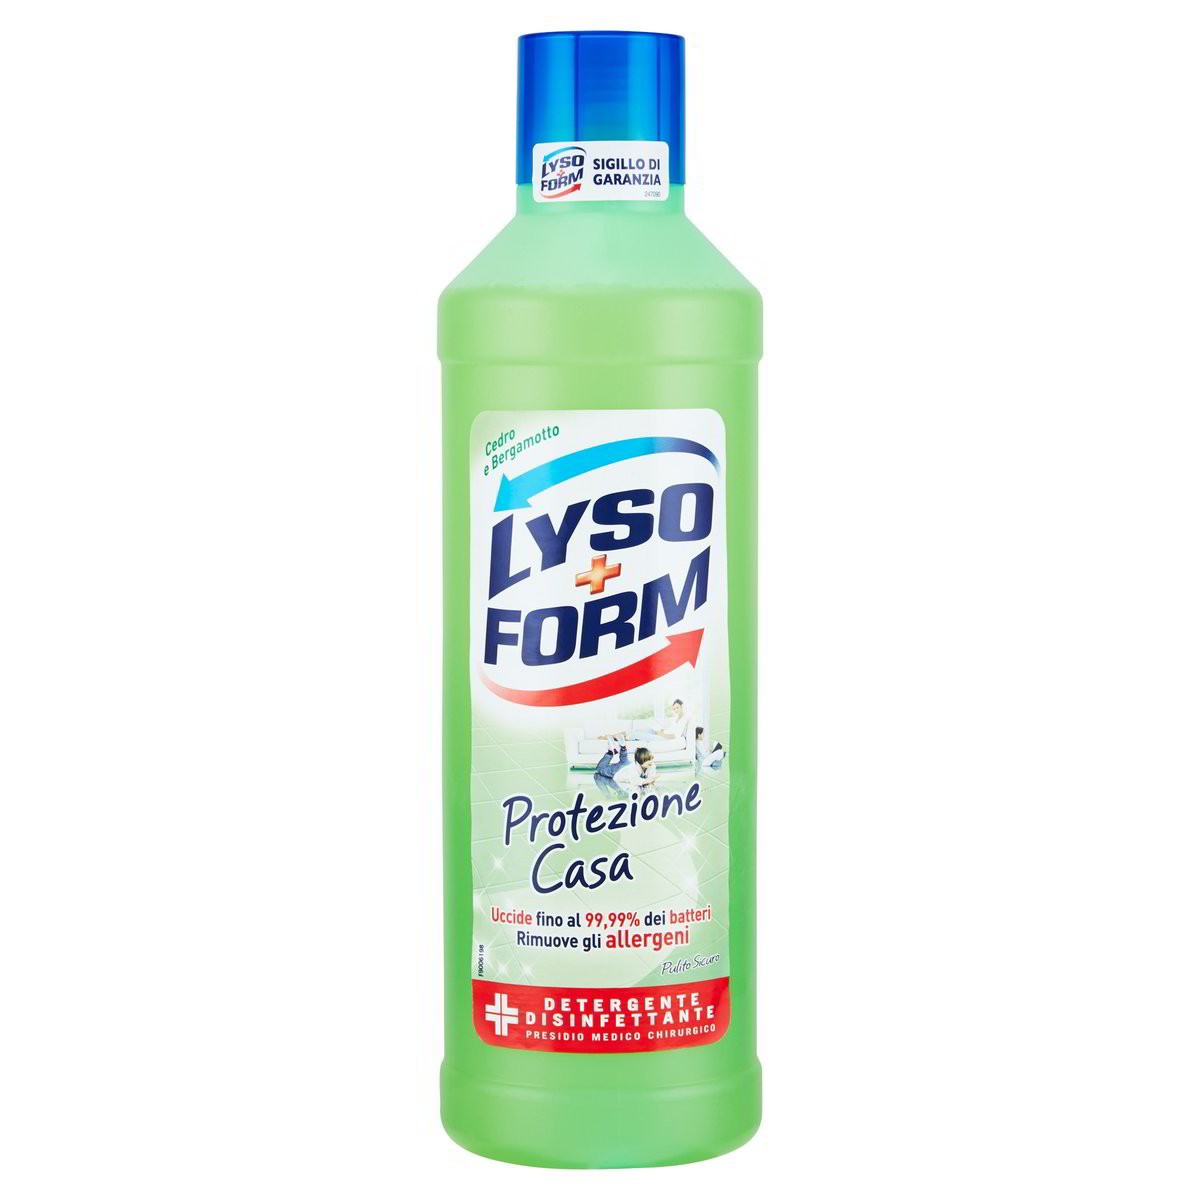 Lyso form Detergente disinfettante Protezione Casa